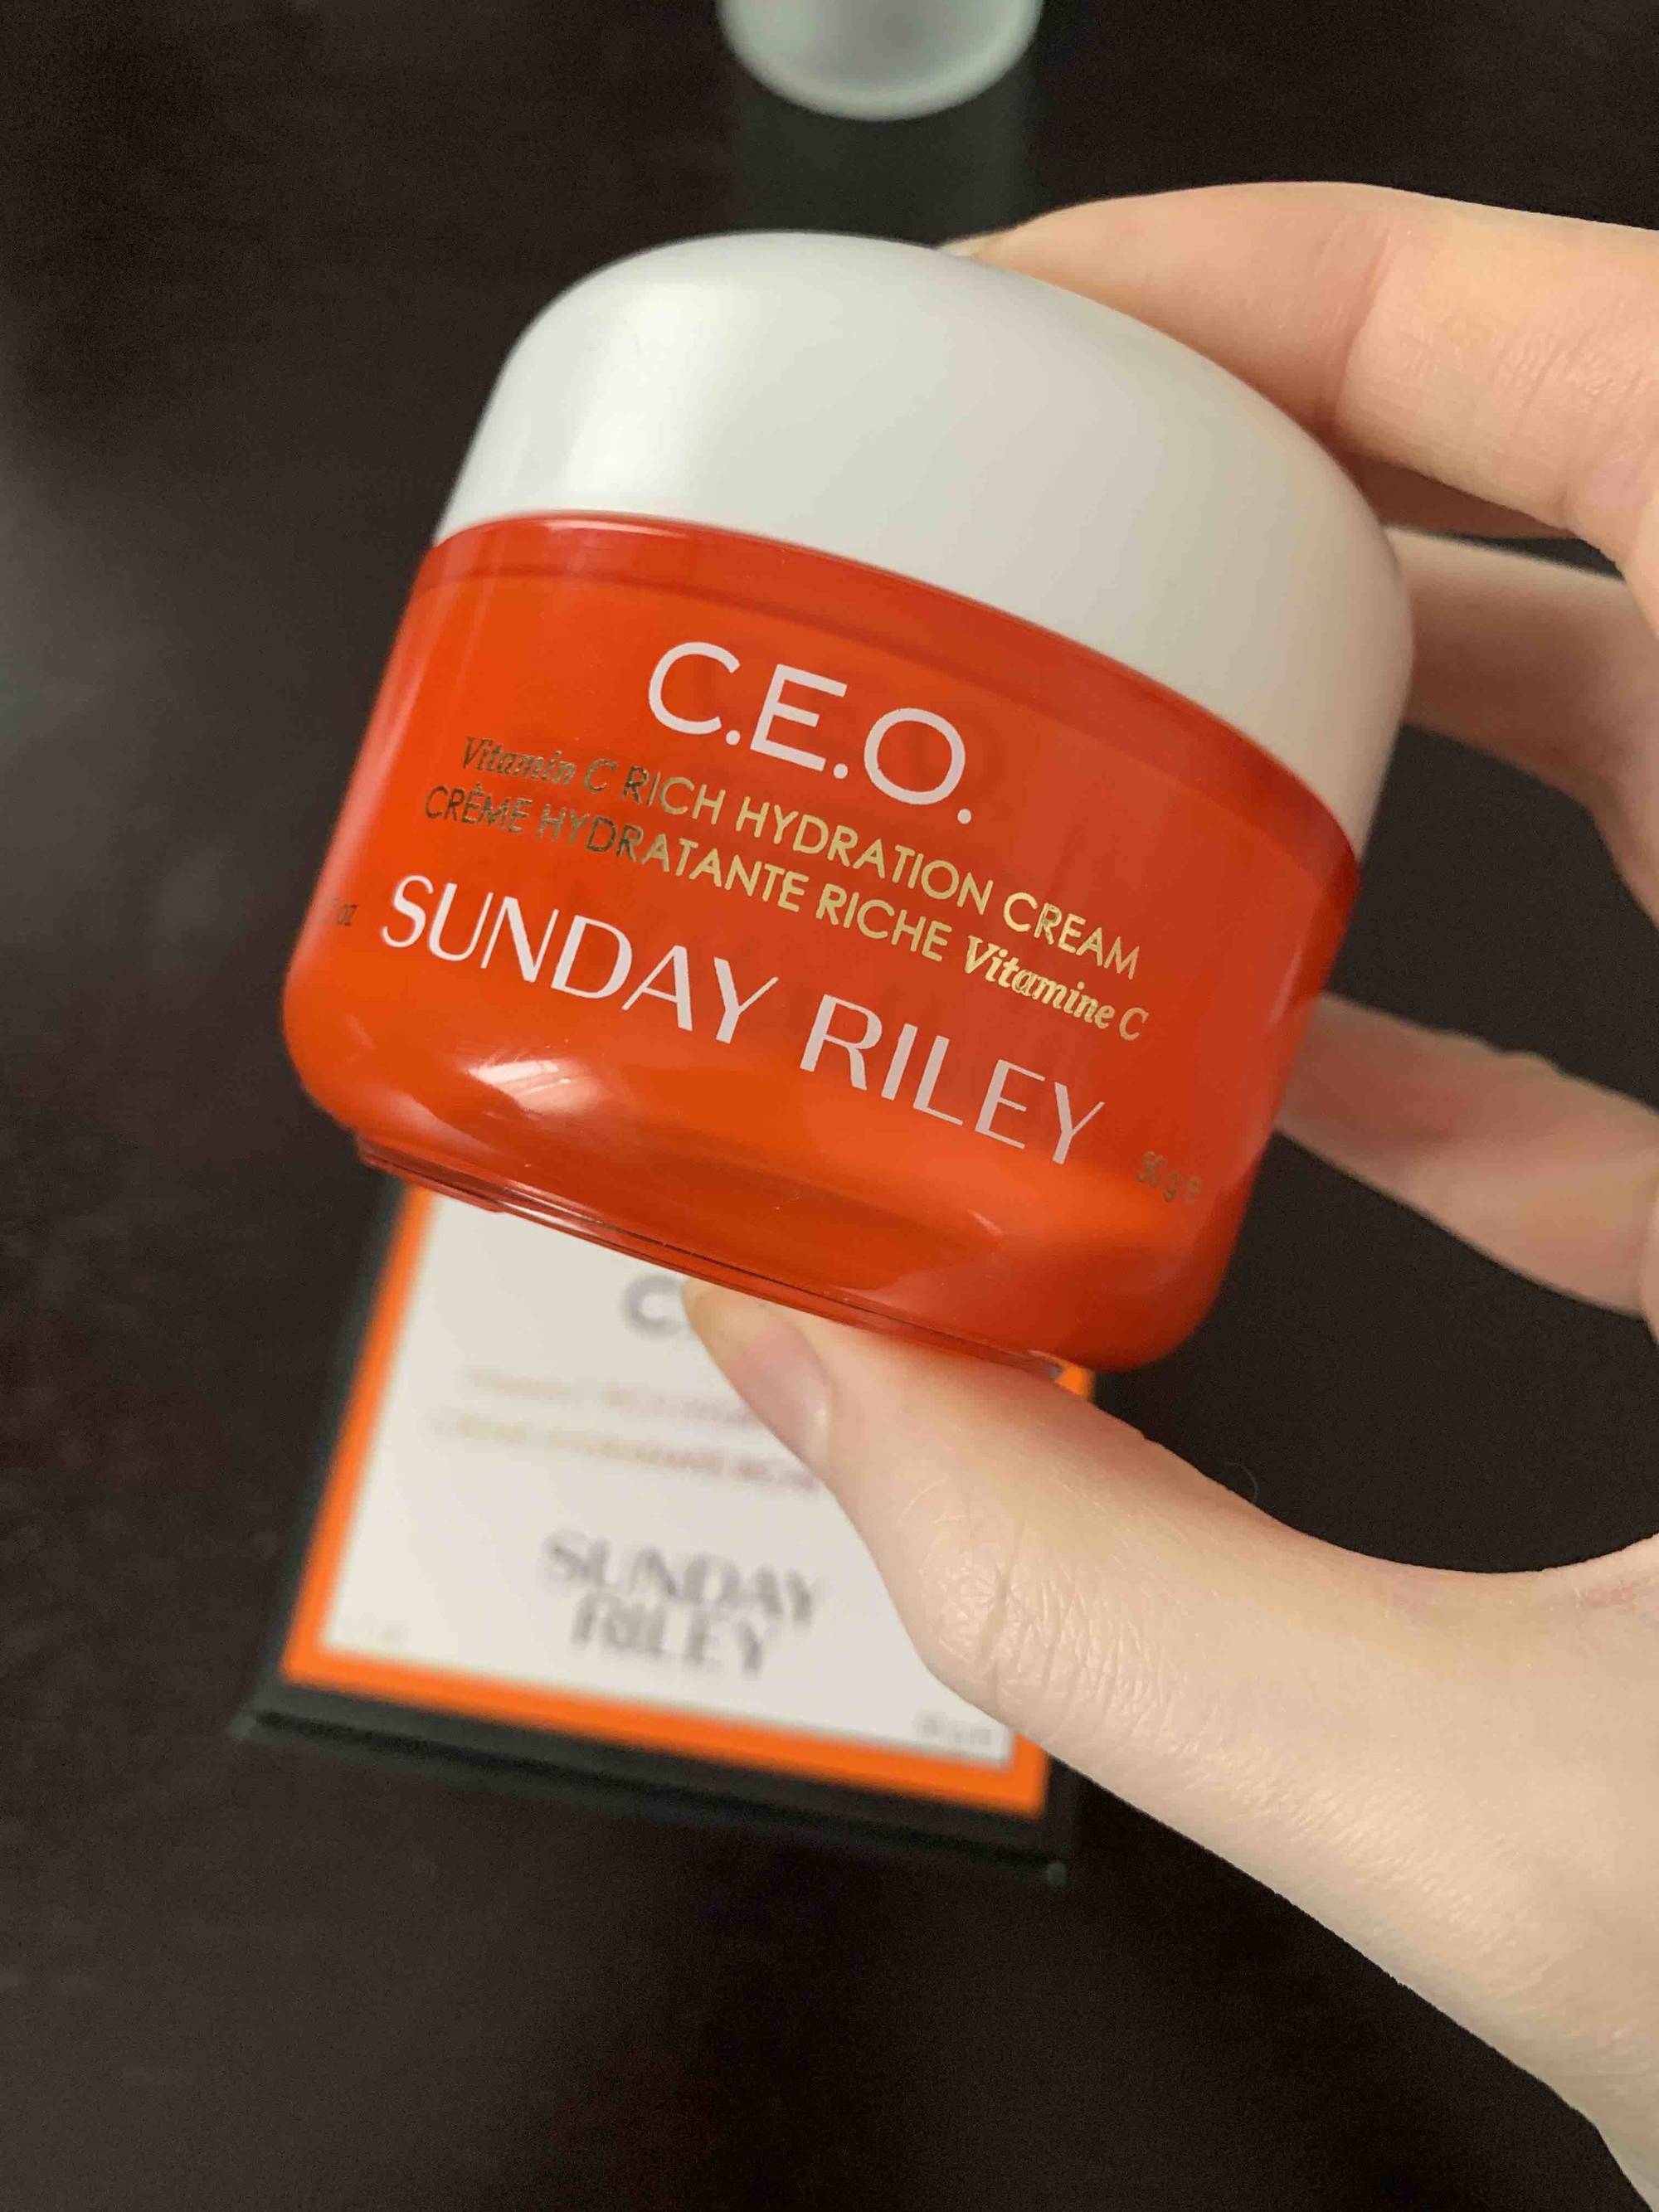 SUNDAY RILEY - C.E.O. - Crème hydratante riche vitamine C